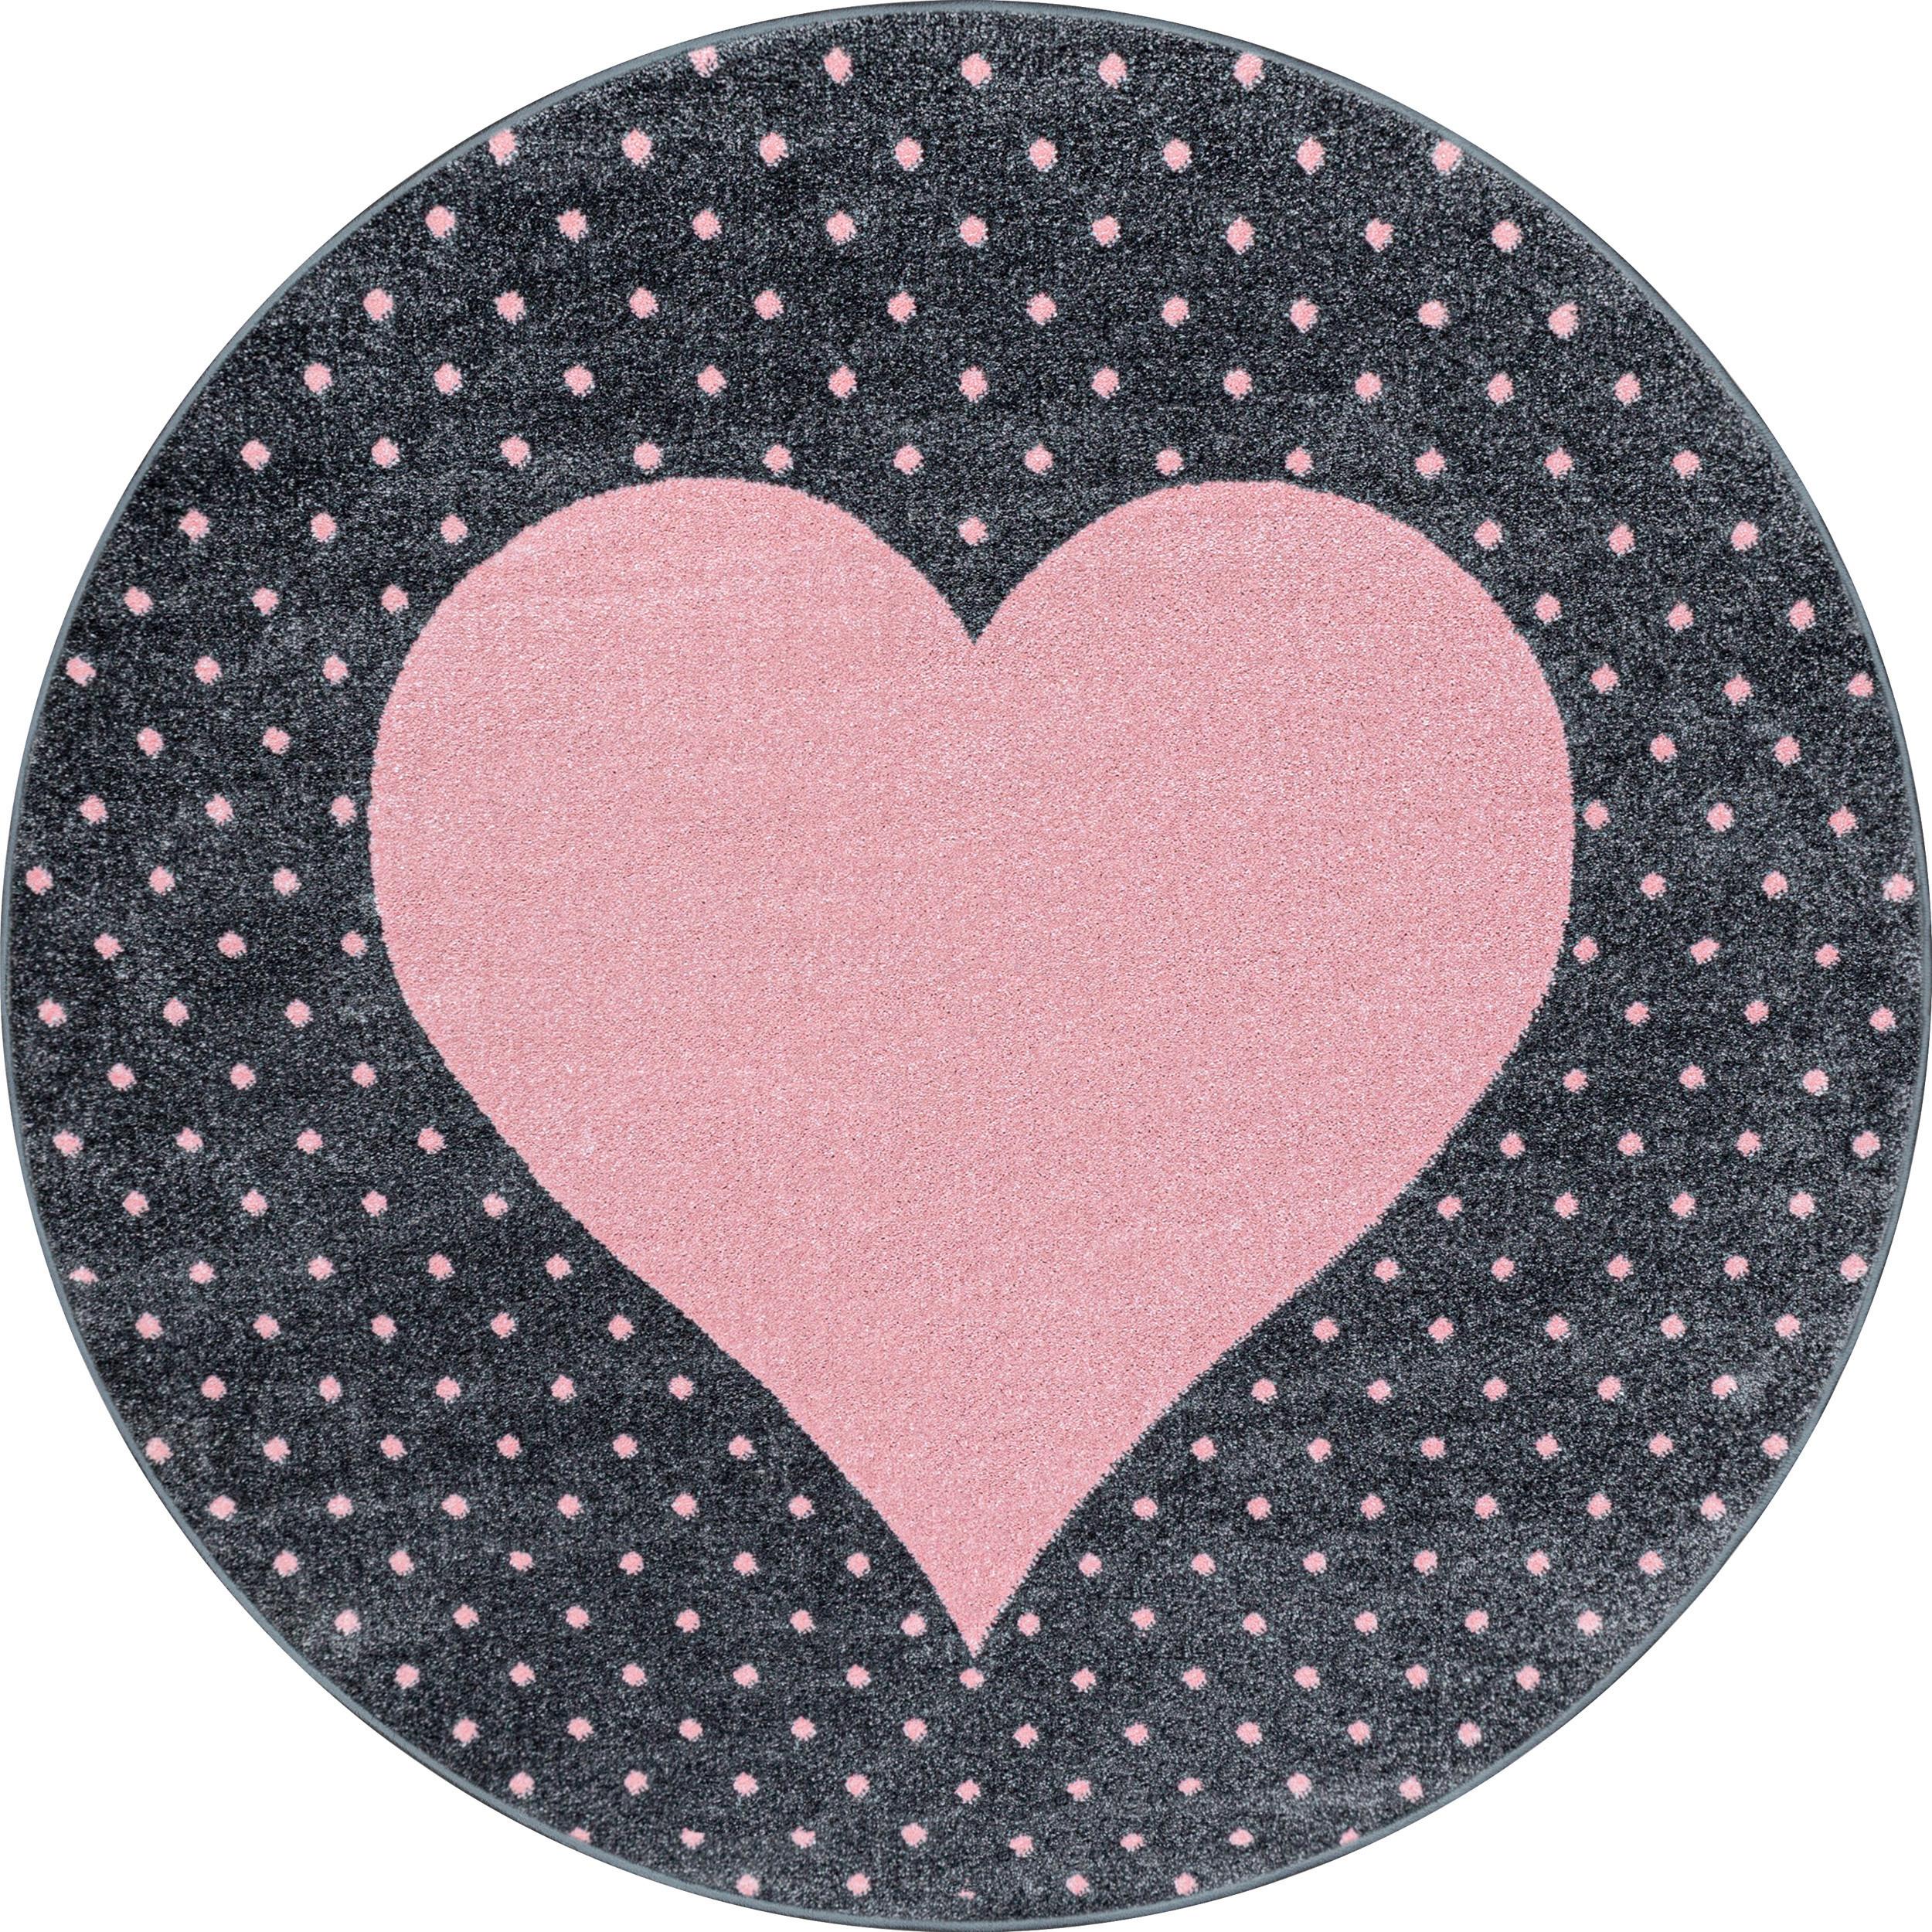 Detský Koberec Srdce 160cm - pink, Trend, textil (160cm) - Ben'n'jen